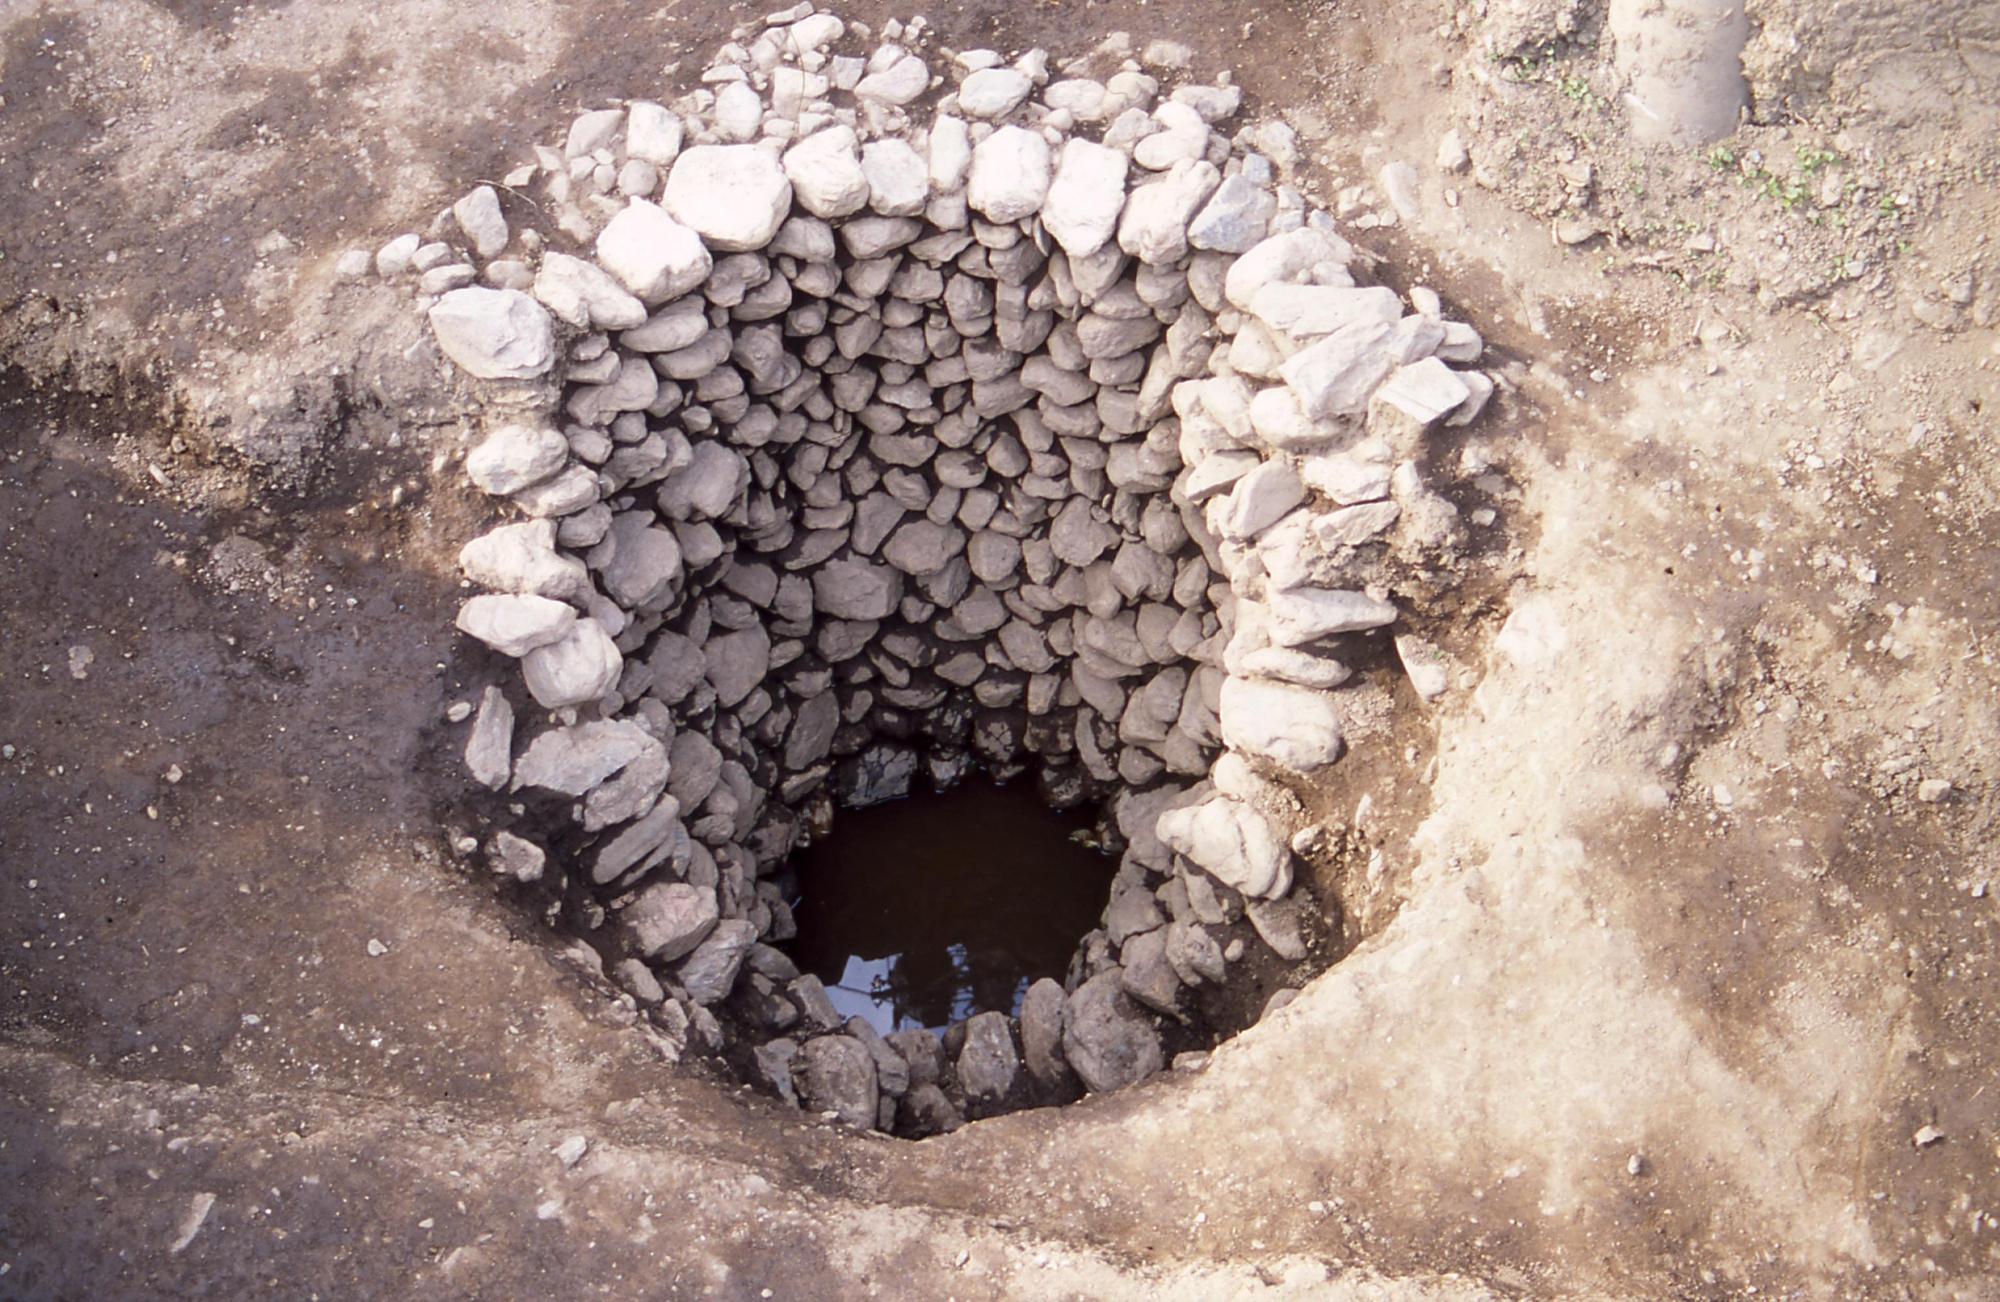 穴の奥から周りを囲むように石が沢山積み上げられている石組みの井戸跡の写真